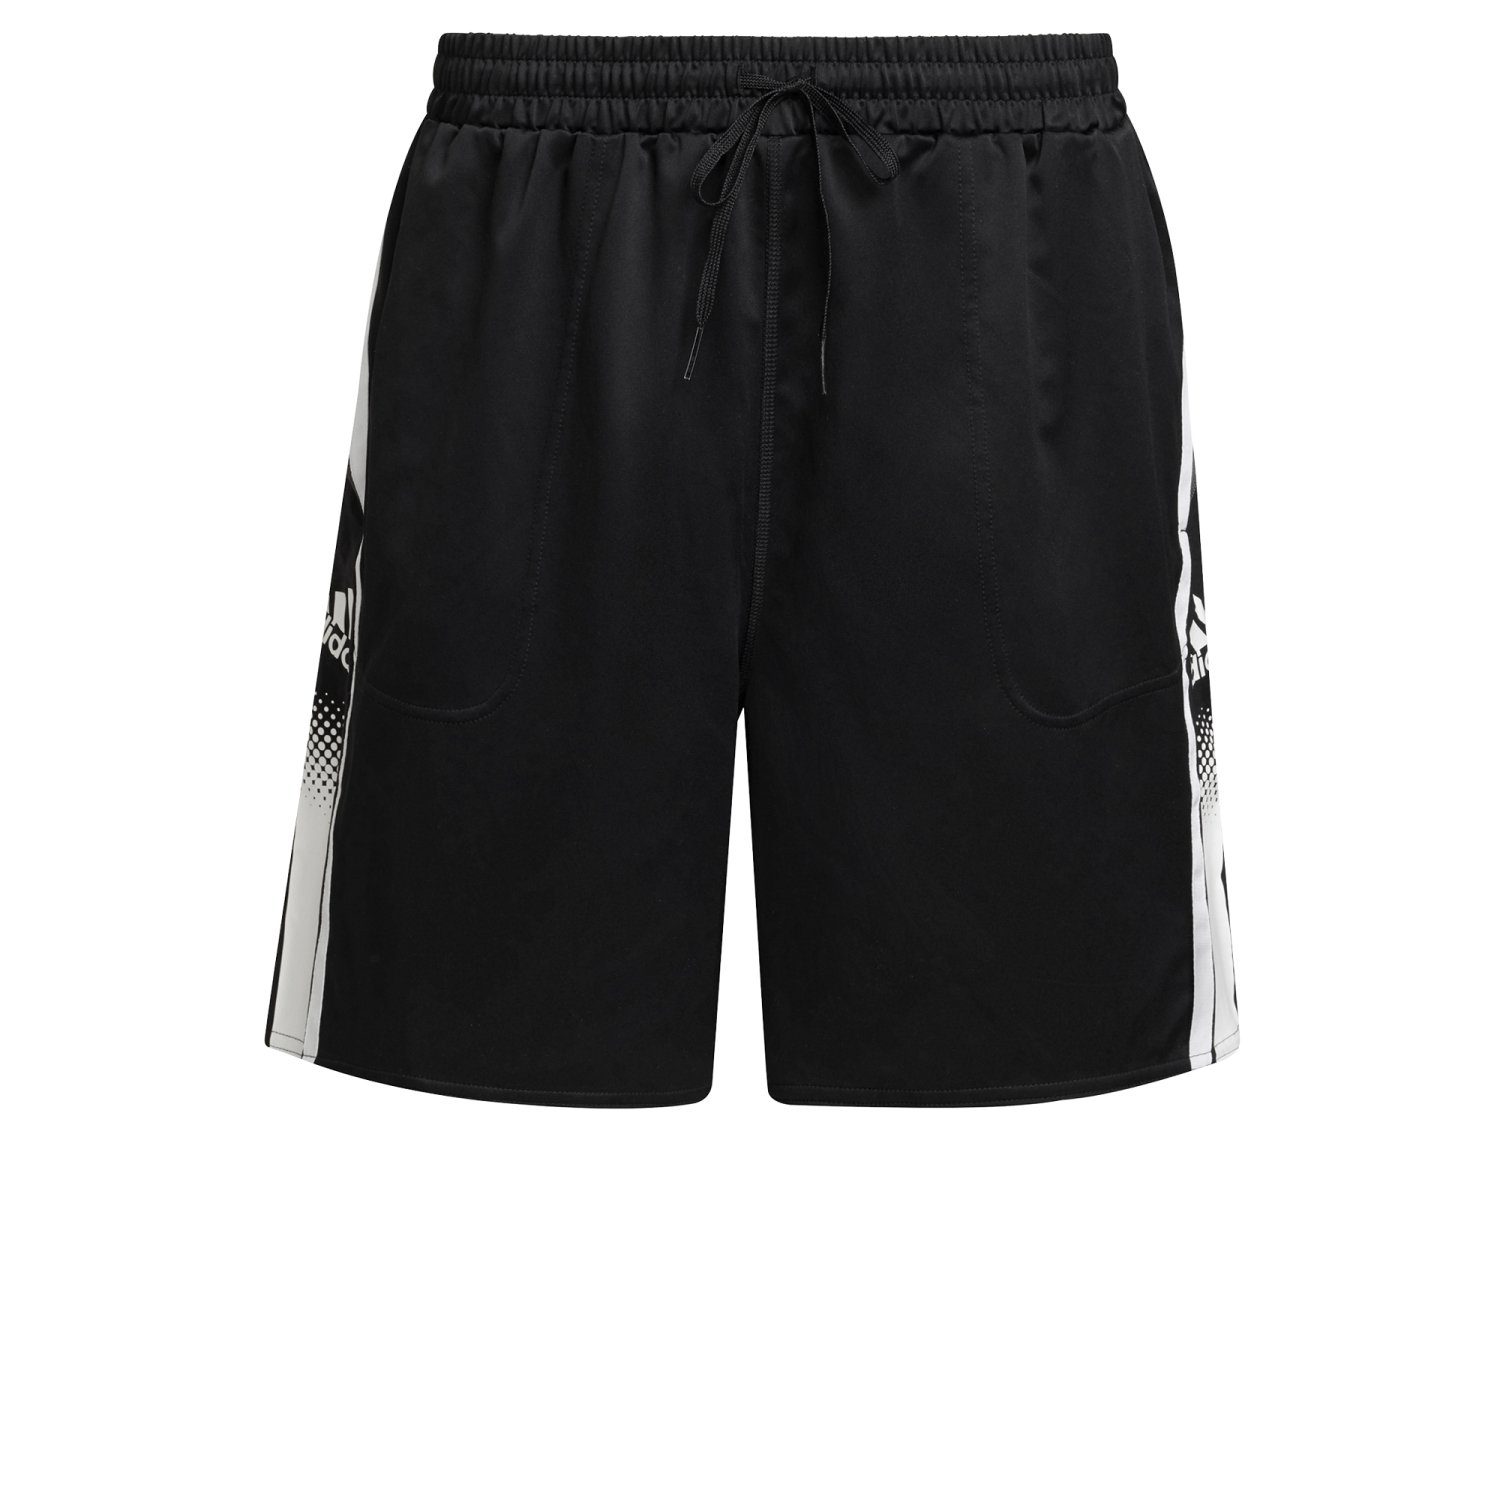 SHO Shorts adidas Performance BLACK/WHITE Seaso M